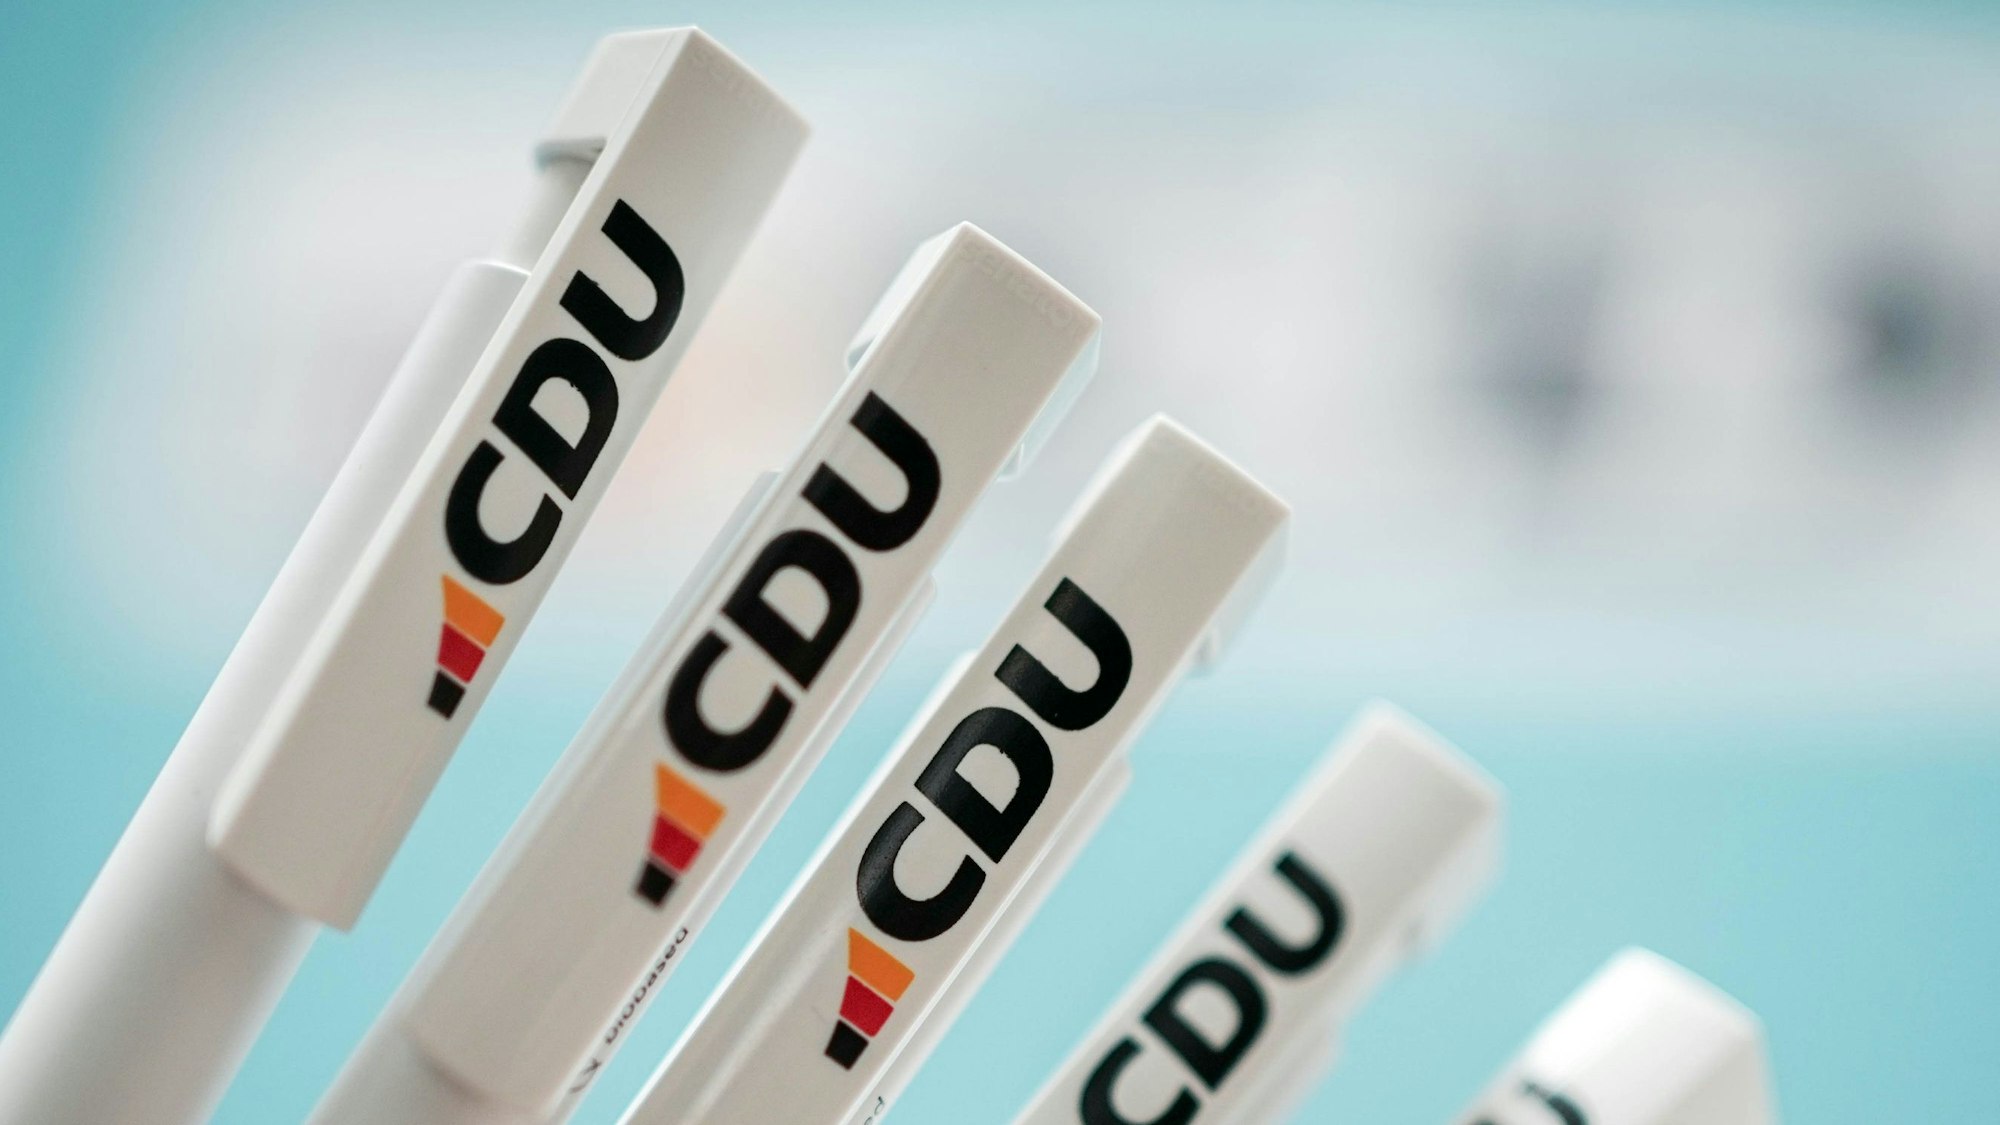 Auf mehreren weißen Kugelschraubern ist das neue Logo der CDU zu sehen. Neben drei Säulen mit den Farben der Deutschland-Flagge gibt es vor allem Kritik für das neue Türkis.